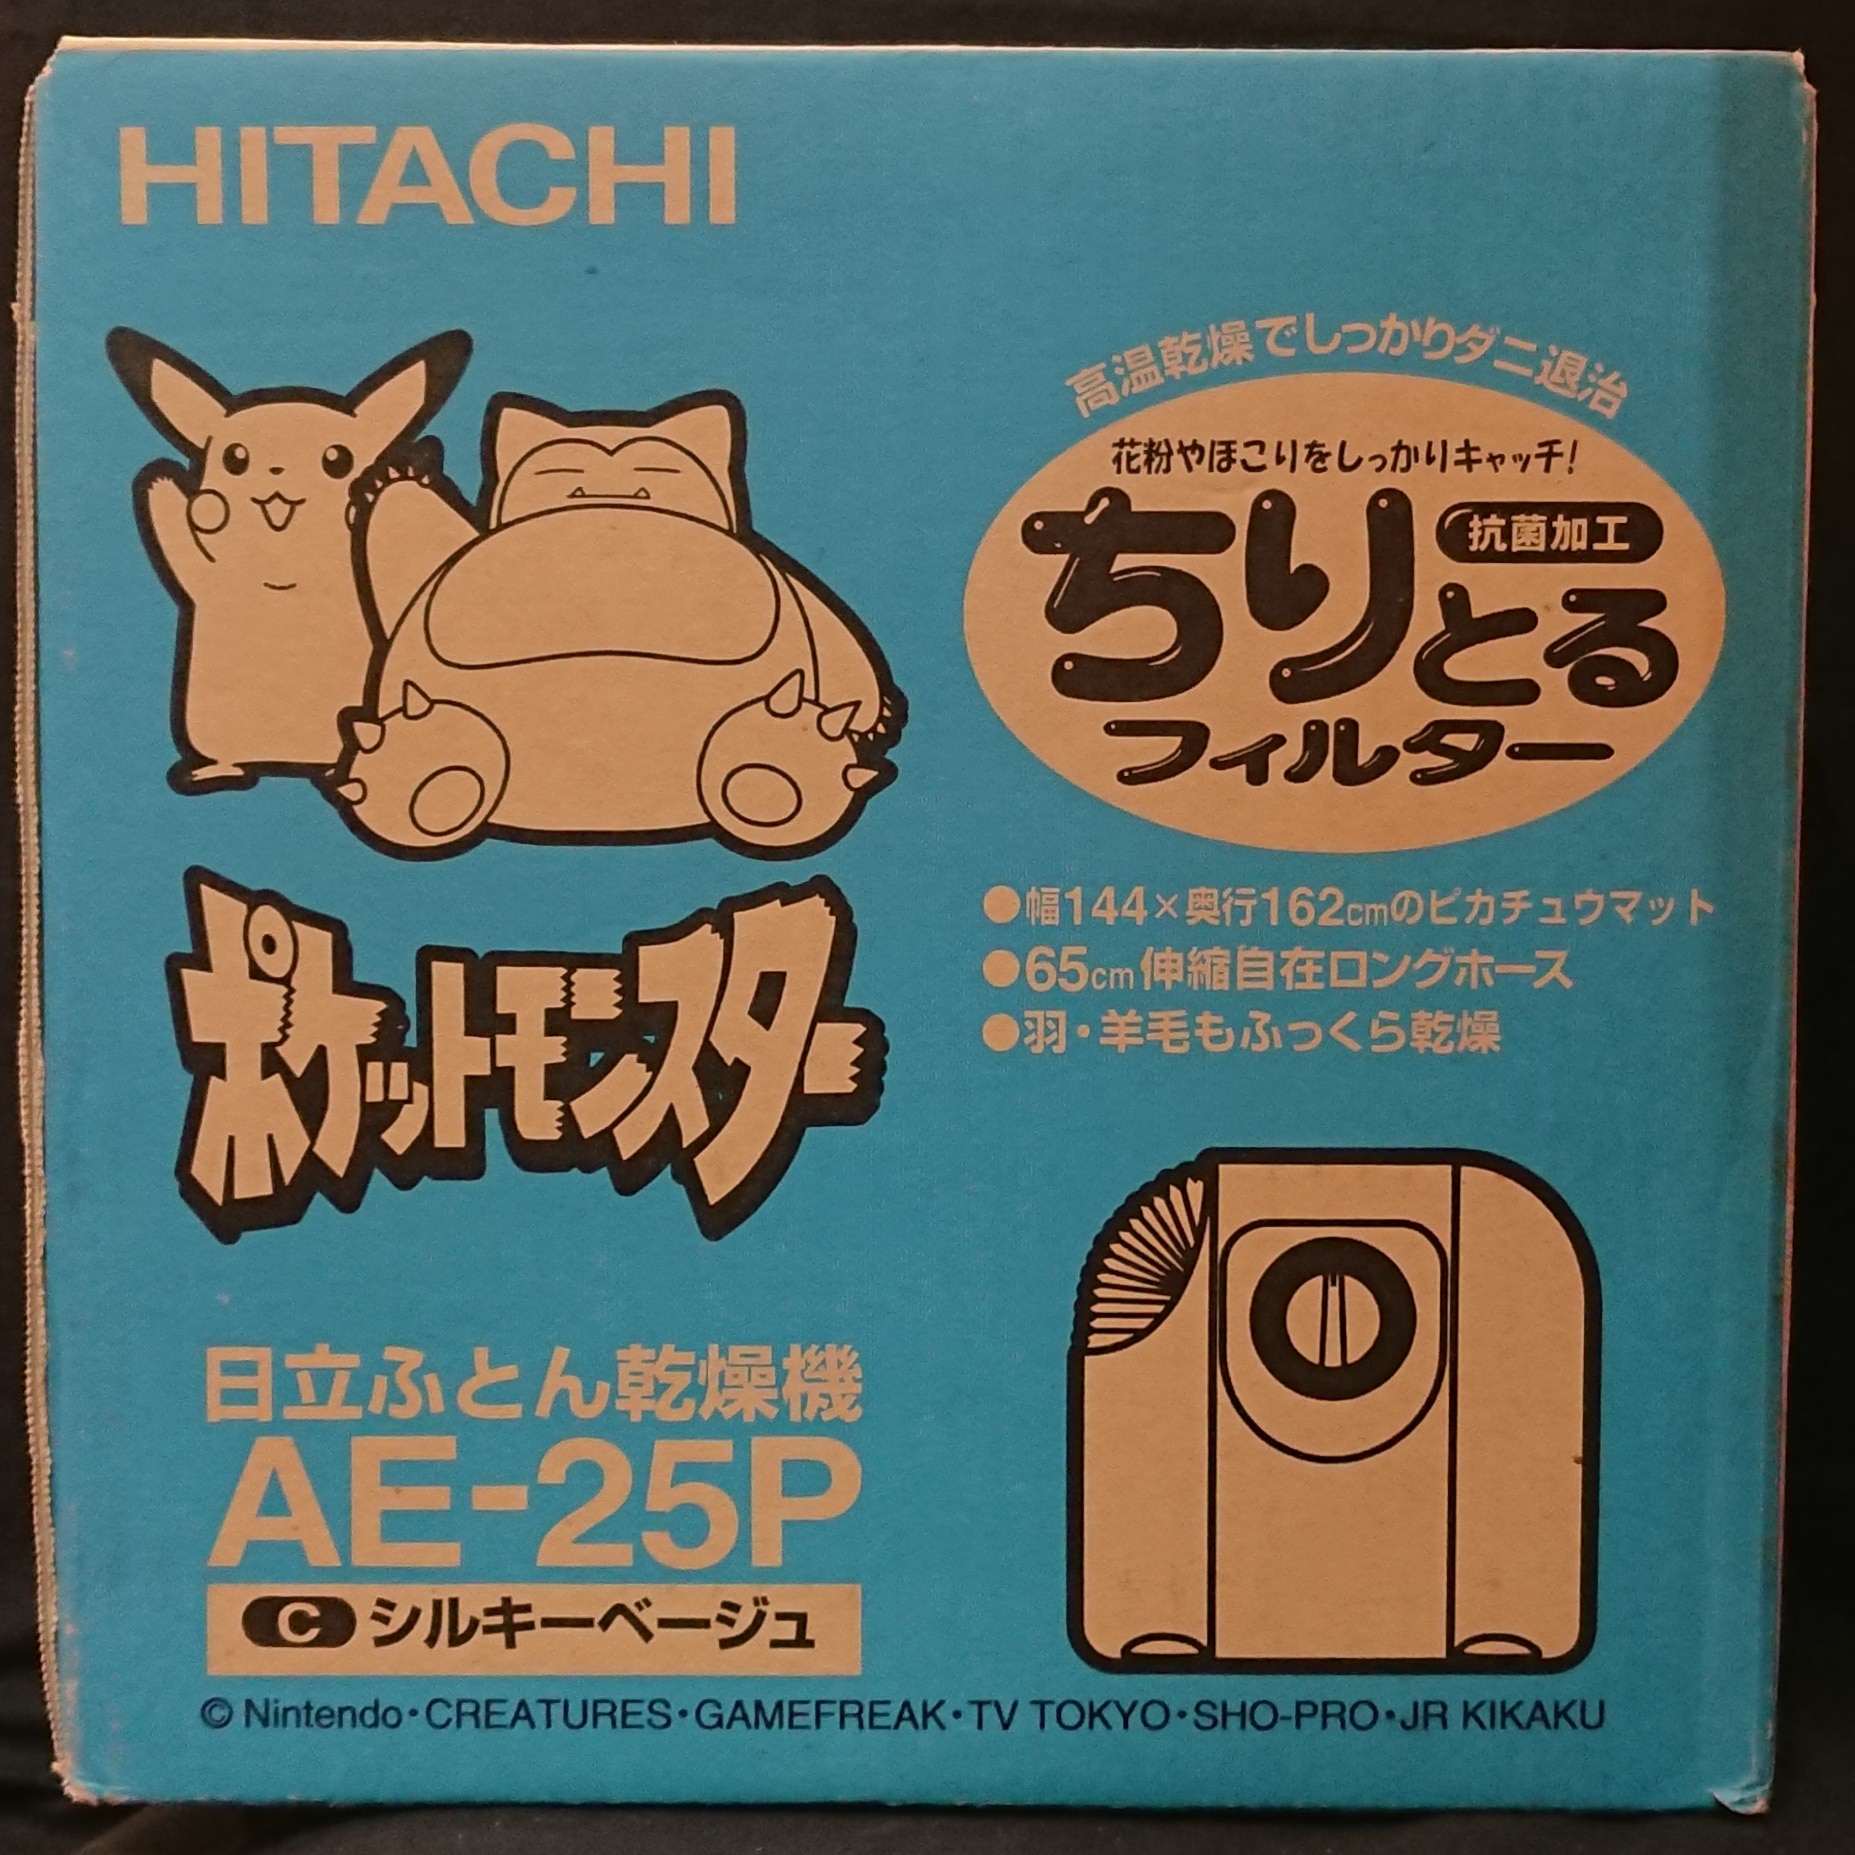 Hitachi ポケットモンスター 日立ふとん乾燥機 Ae 25p シルキーベージュ ピカチュウとカビゴン Pikachu Kabigon まんだらけ Mandarake